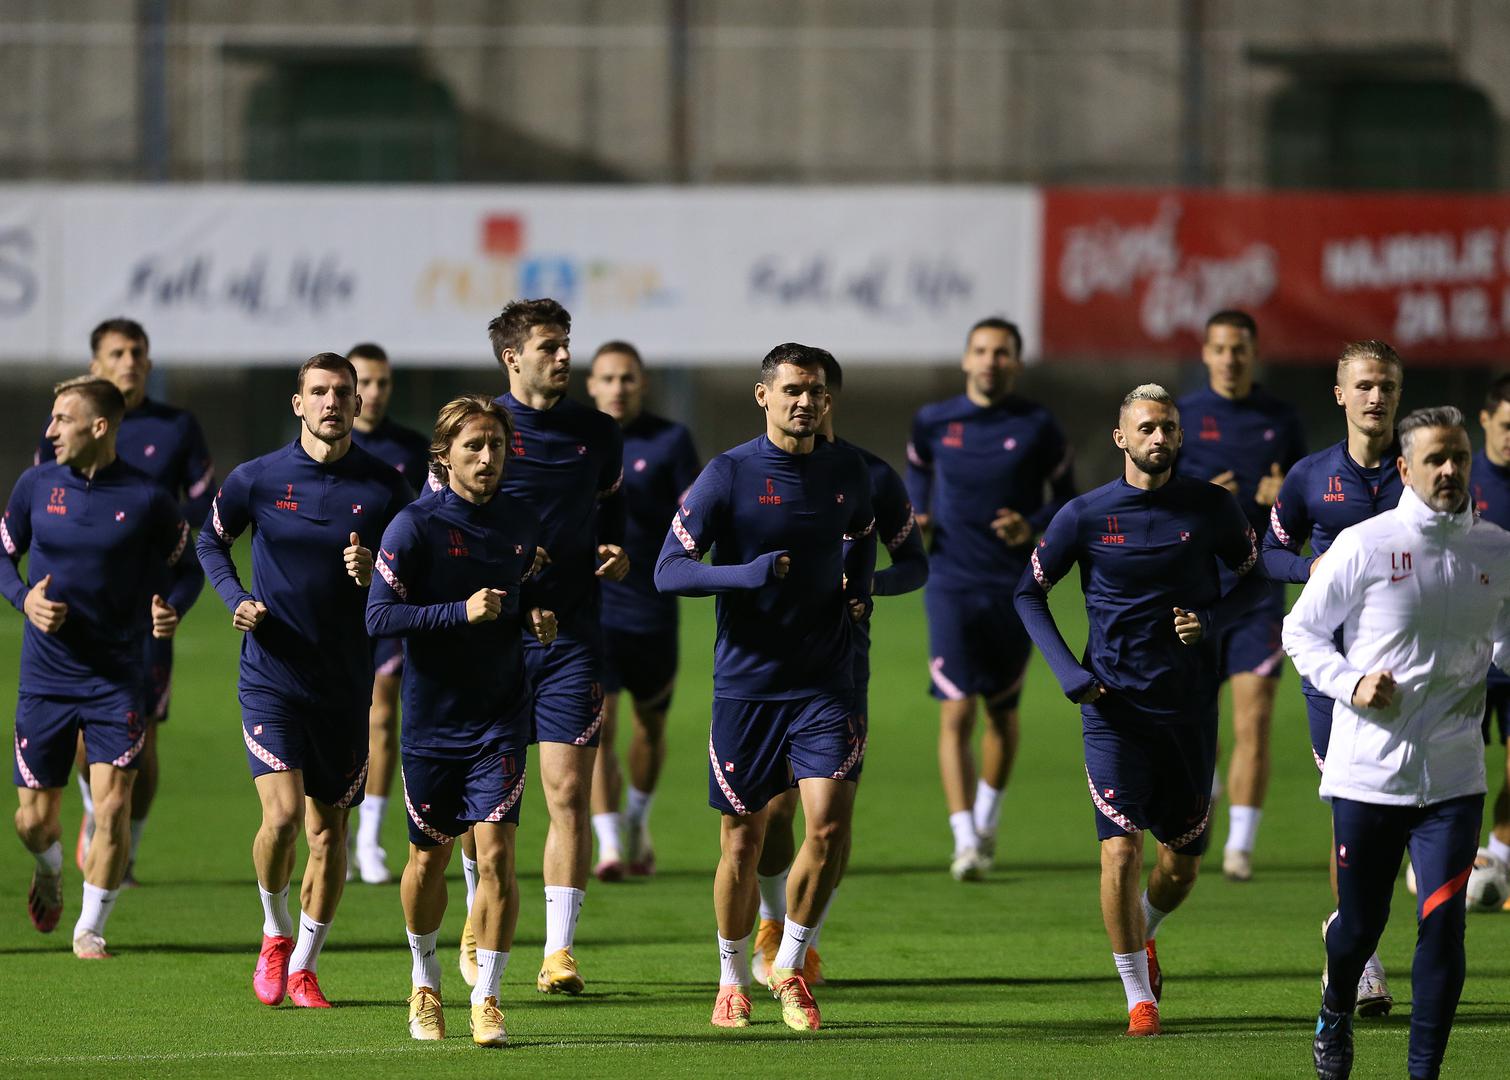 Hrvatska nogometna reprezentacija na Maksimiru je odradila trening uoči utakmica protiv Švedske (11. listopada) i Francuske (14. listopada) u Ligi nacija